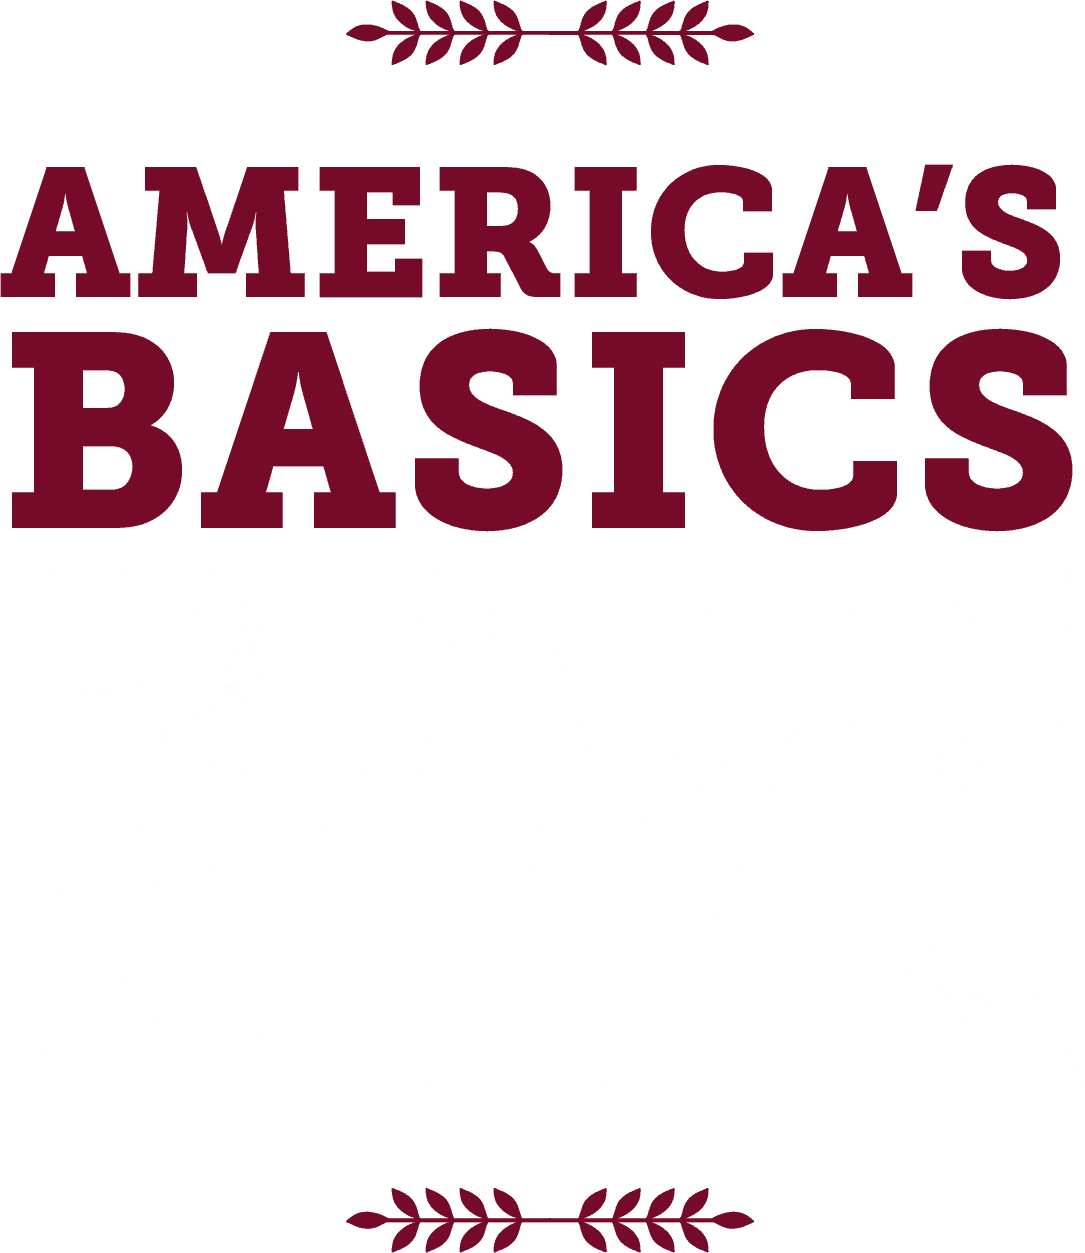 America's Basics Made Better